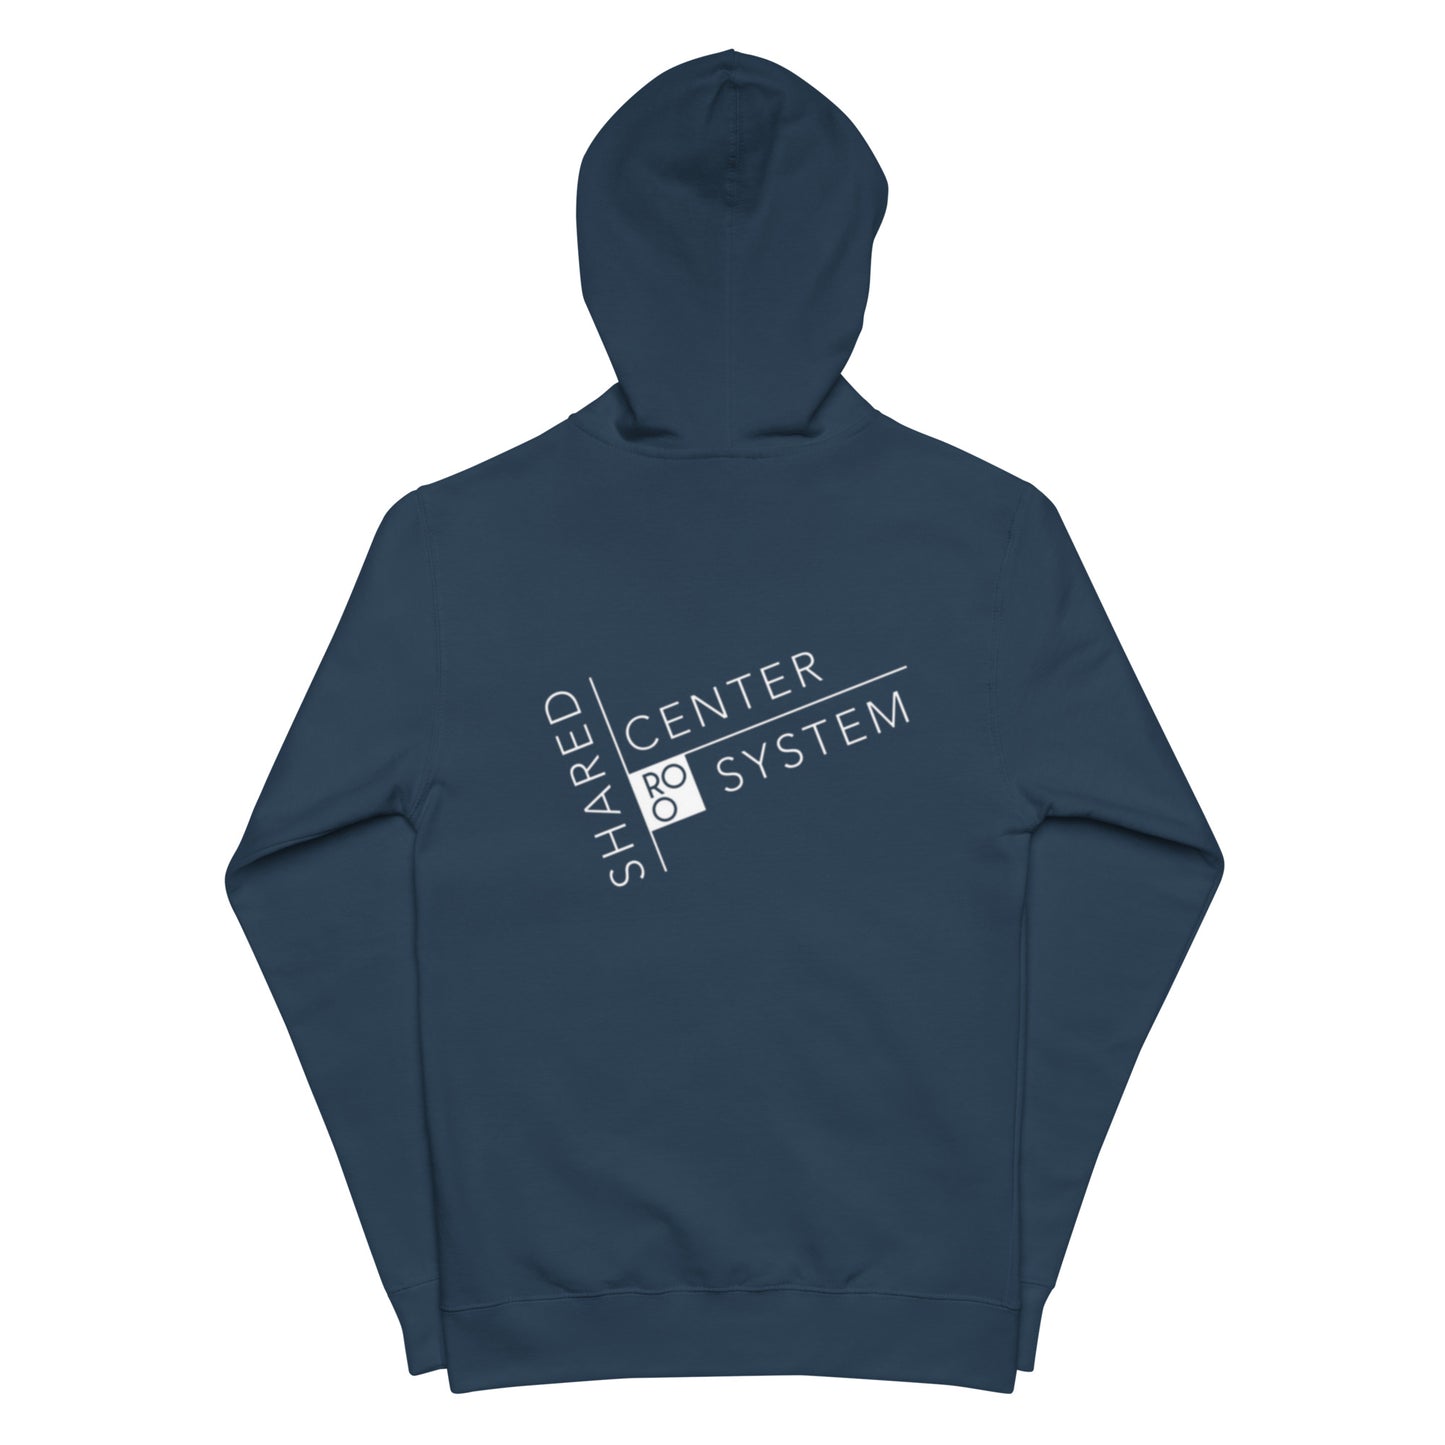 Royston Method Unisex fleece zip up hoodie